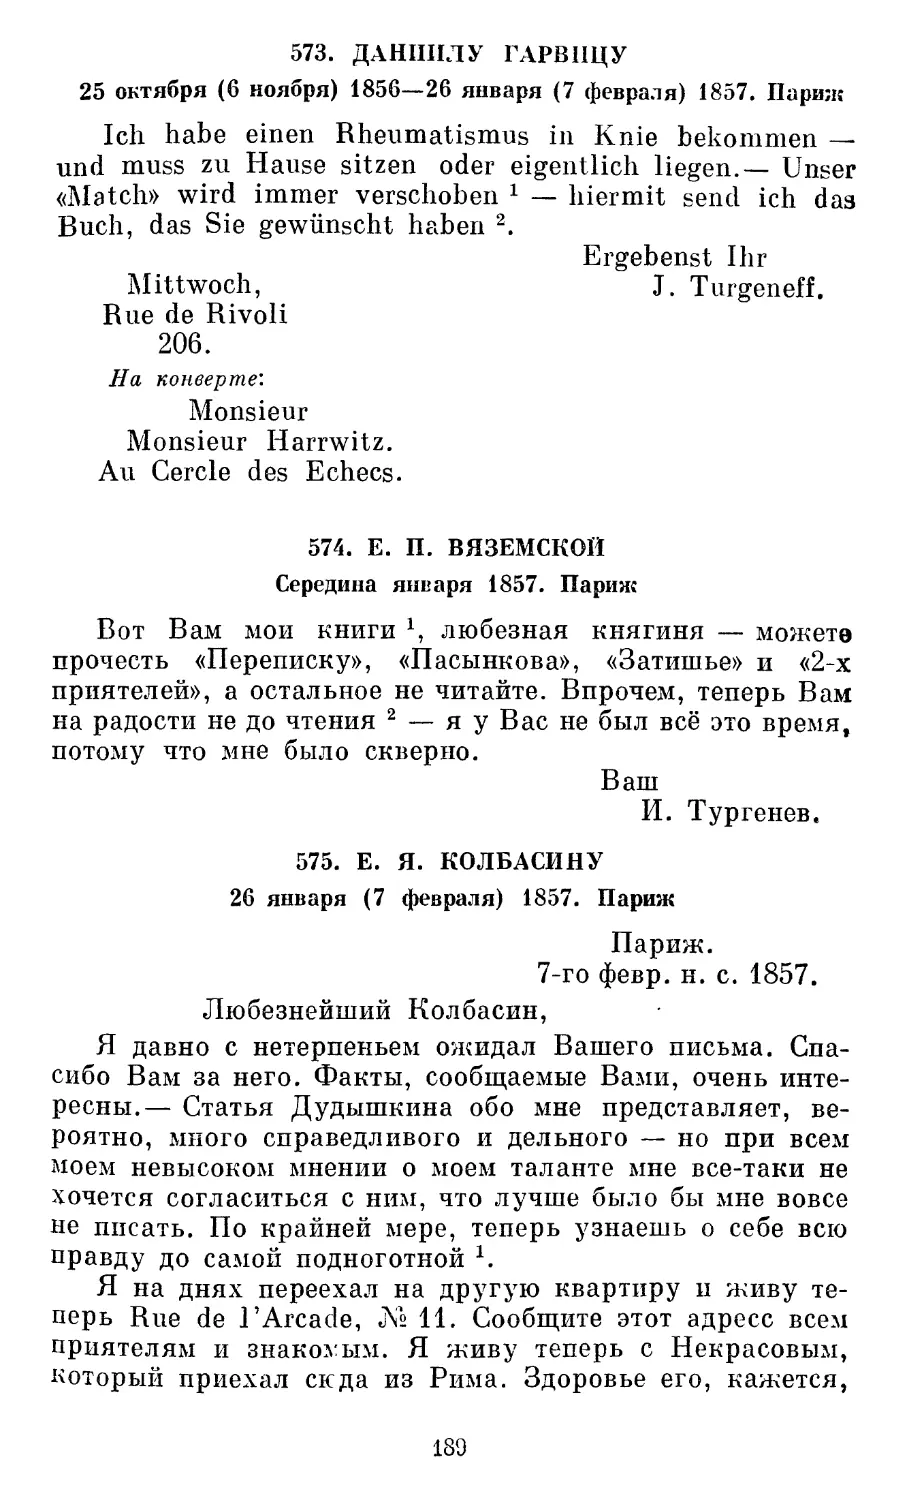 574. Е.П. Вяземской. Середина января 1857